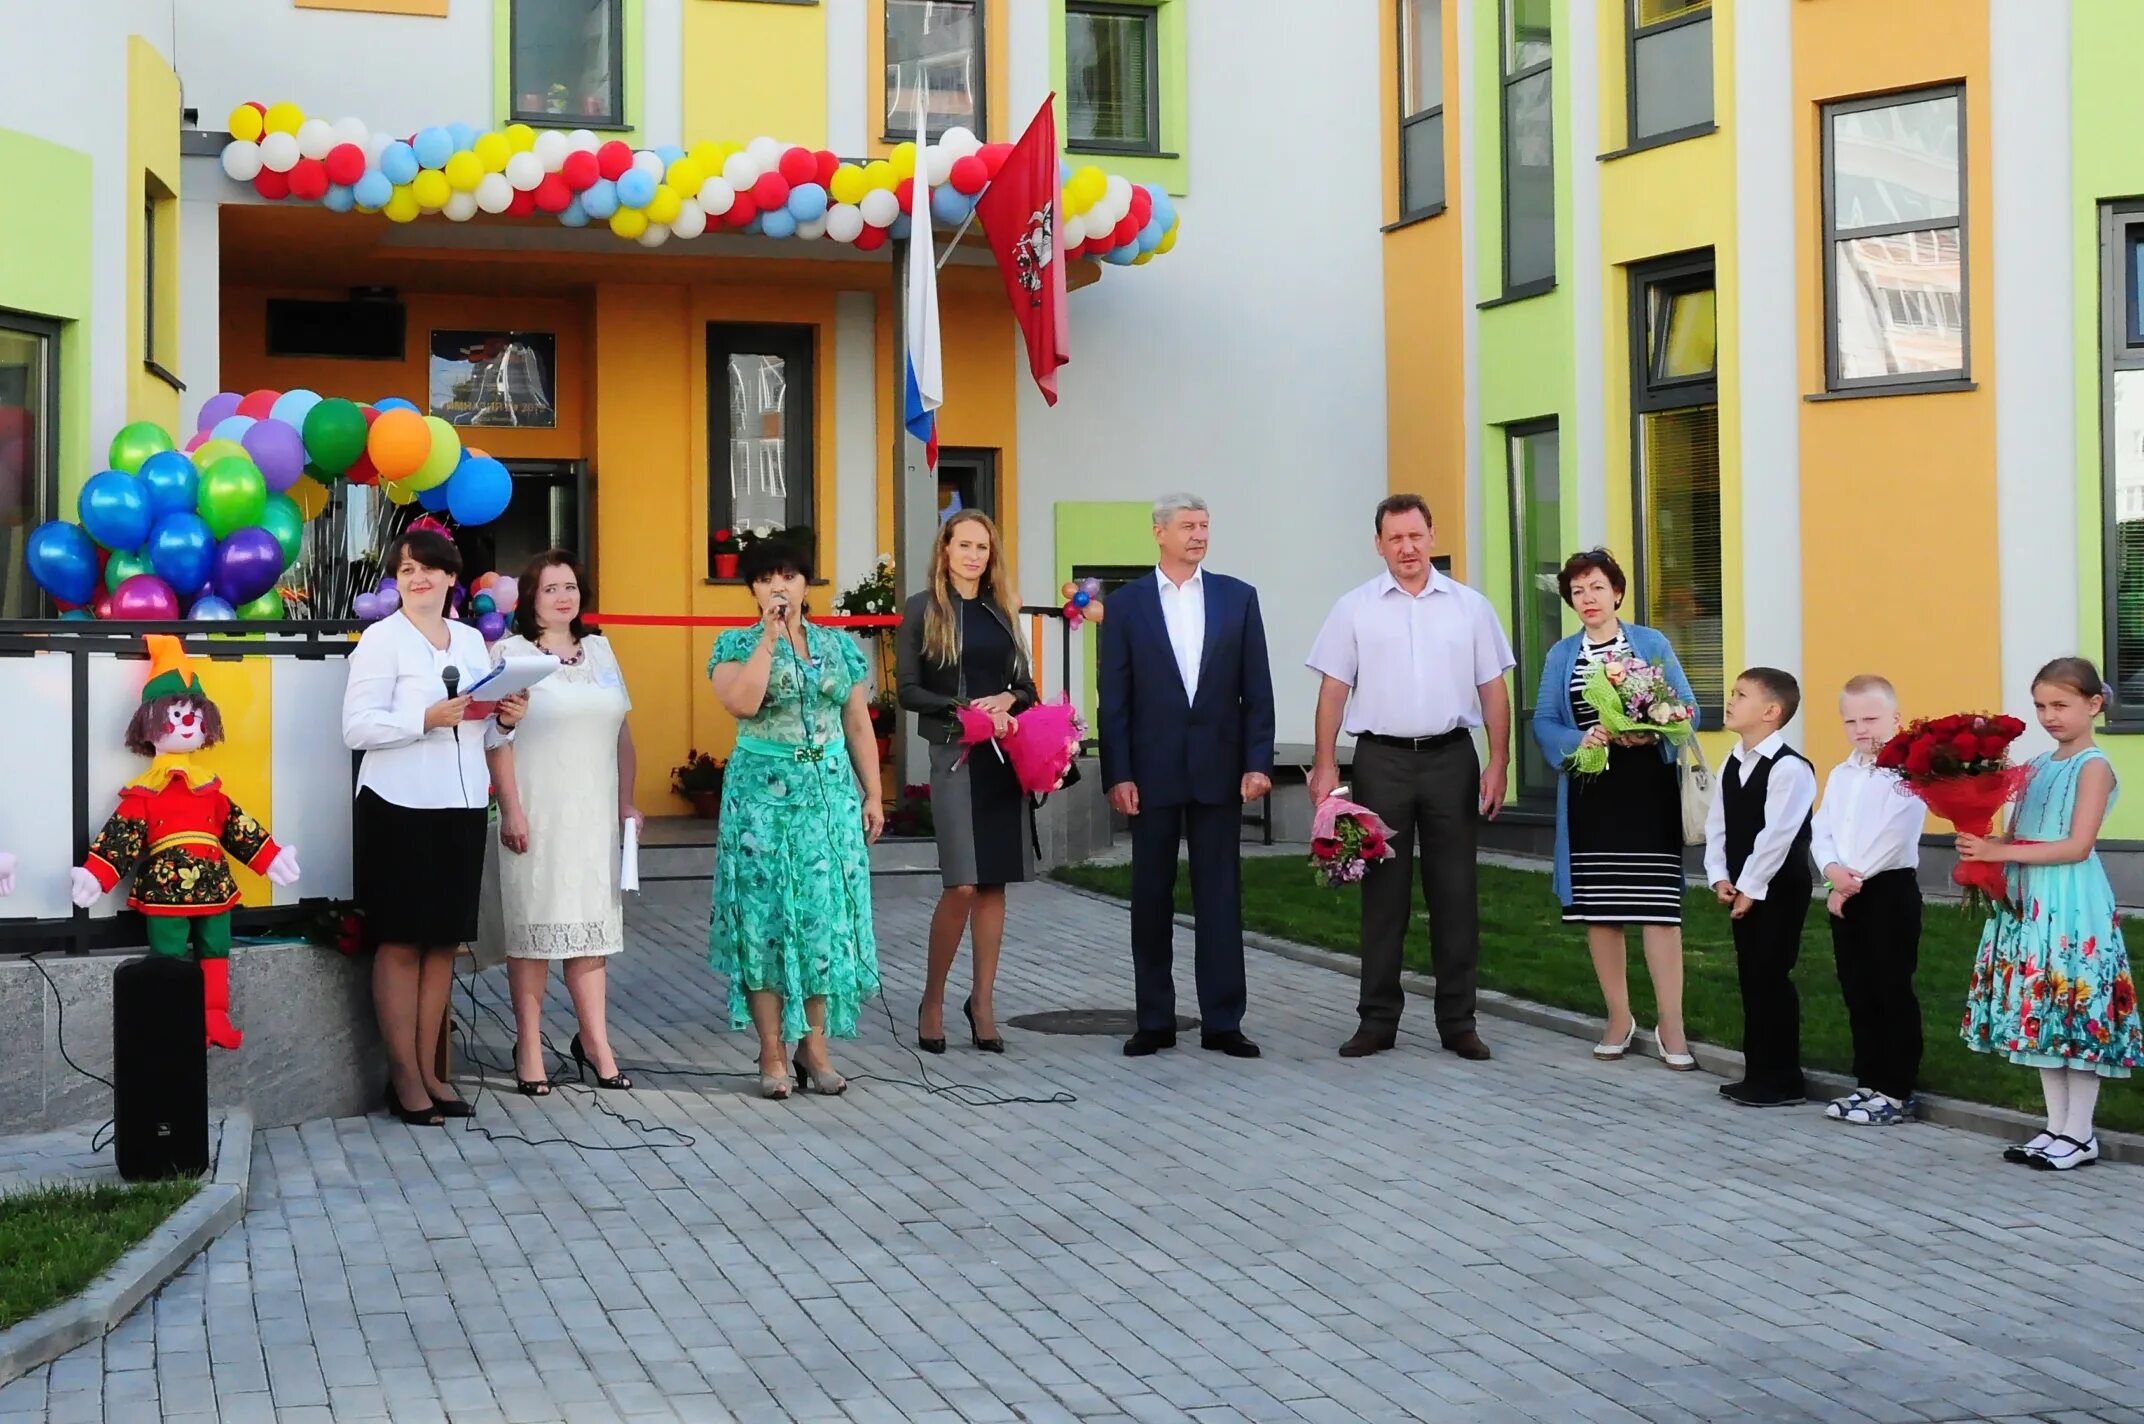 Открытие детского сада. Детские сады в Перово. Открытие детского сада домашнего типа. Открытие детского сада фото.